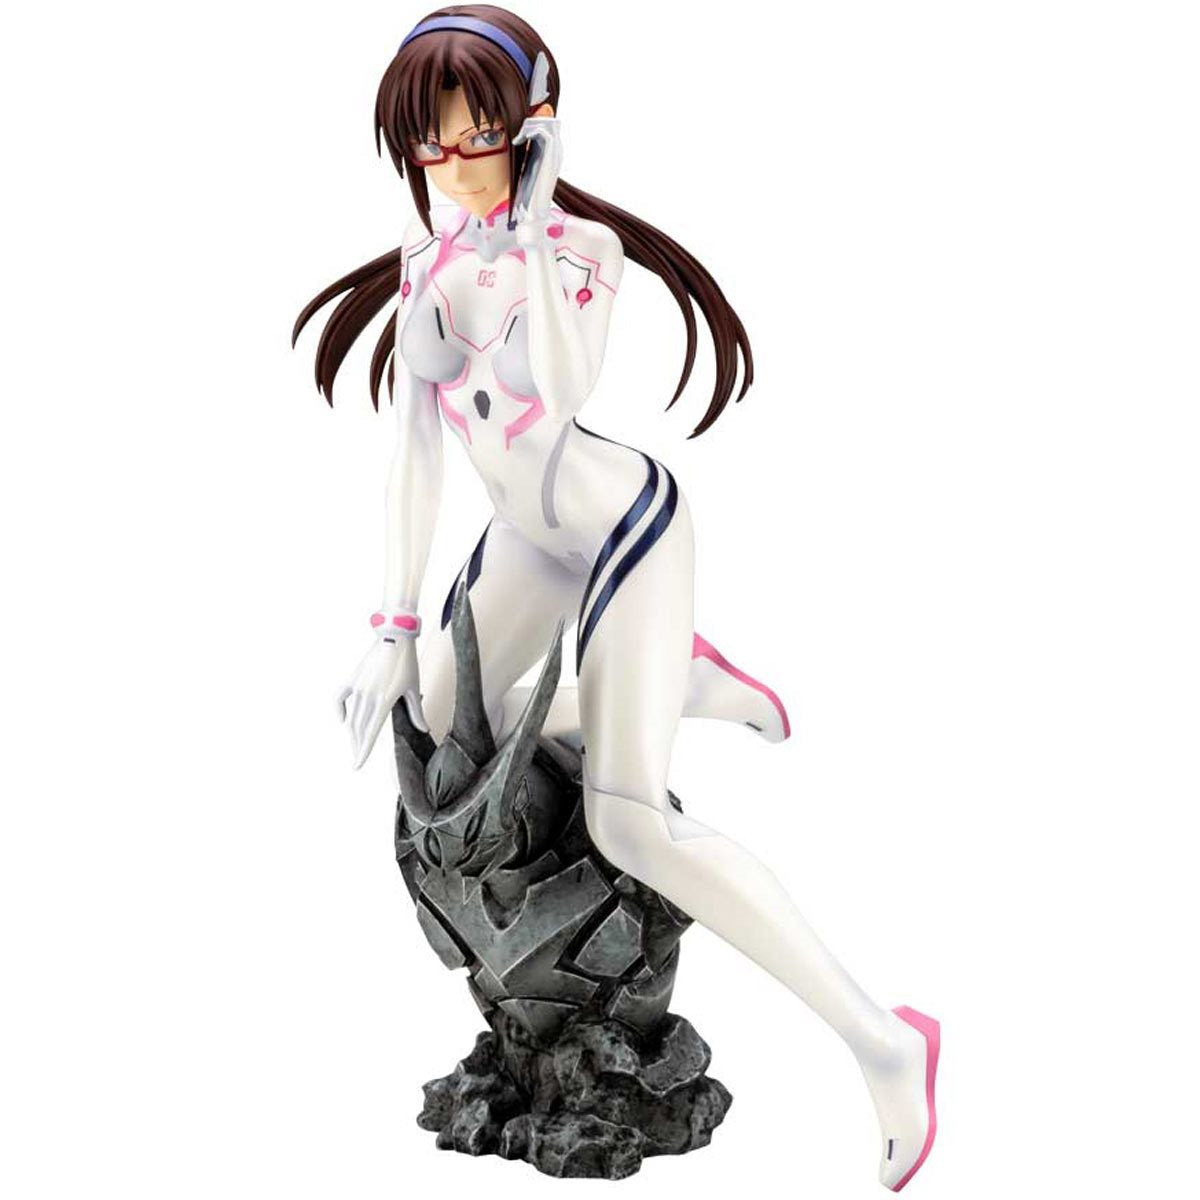 Rebuild of Evangelion Mari Makinami Illustrious White Plugsuit Ver. 1:6 Scale Statue